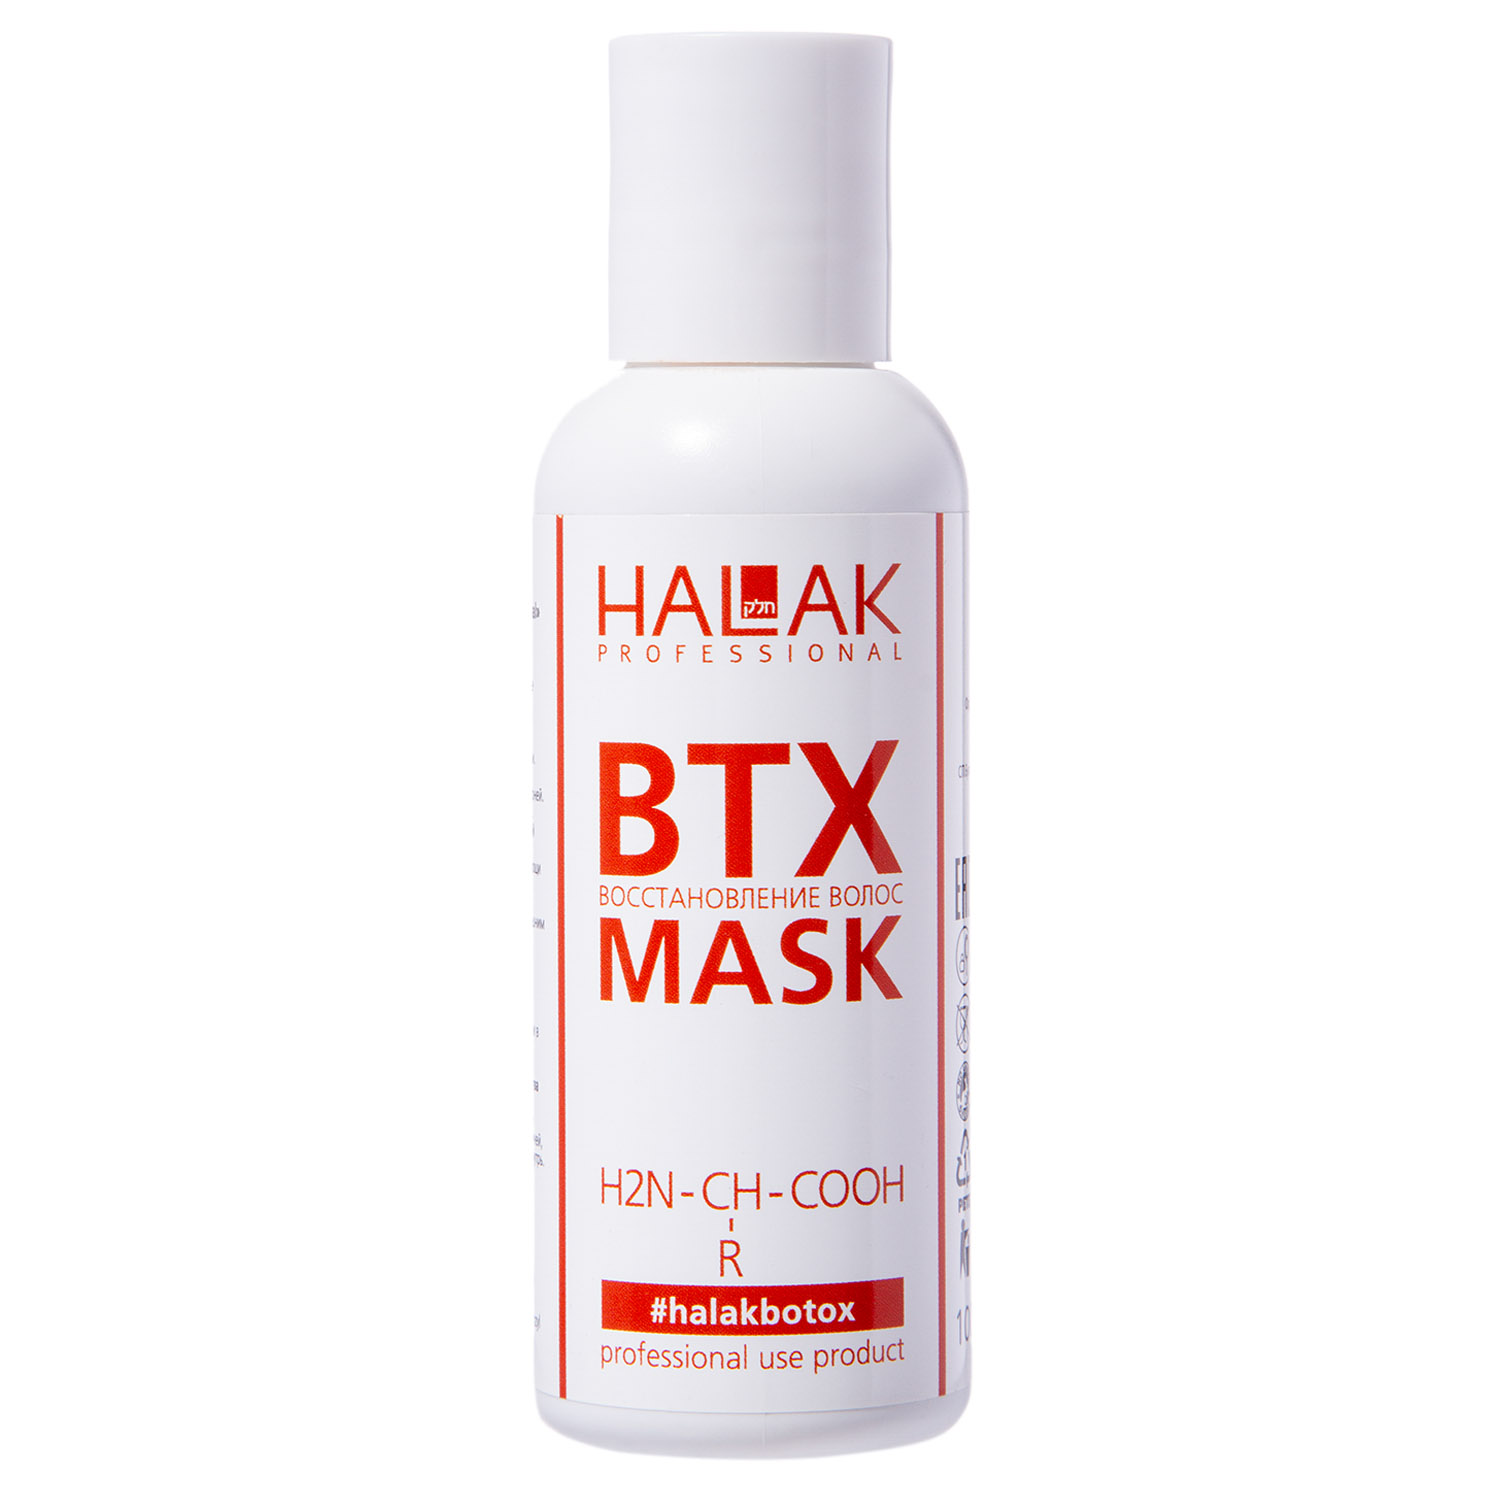 Halak Professional Маска для восстановления волос Hair Treatment, 100 мл (Halak Professional, BTX) цена и фото